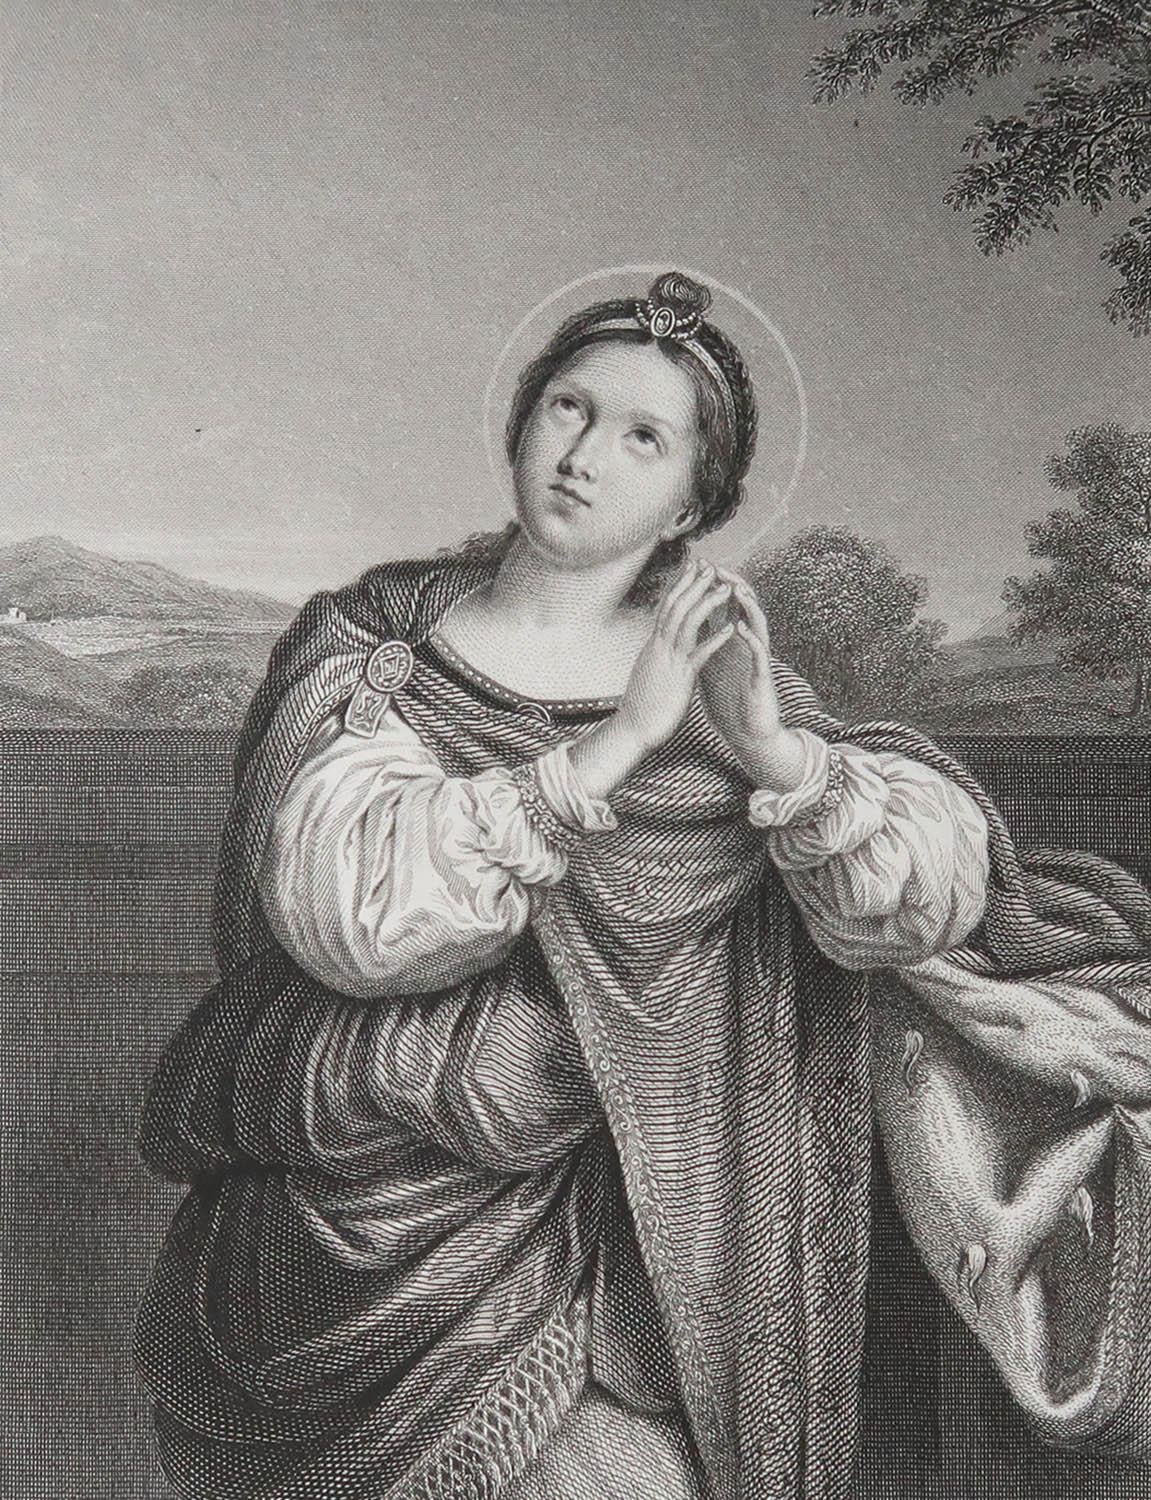 Wunderschönes Bild nach Domenichino

Feiner Stahlstich. 

Veröffentlicht  C.1850

Ungerahmt.

